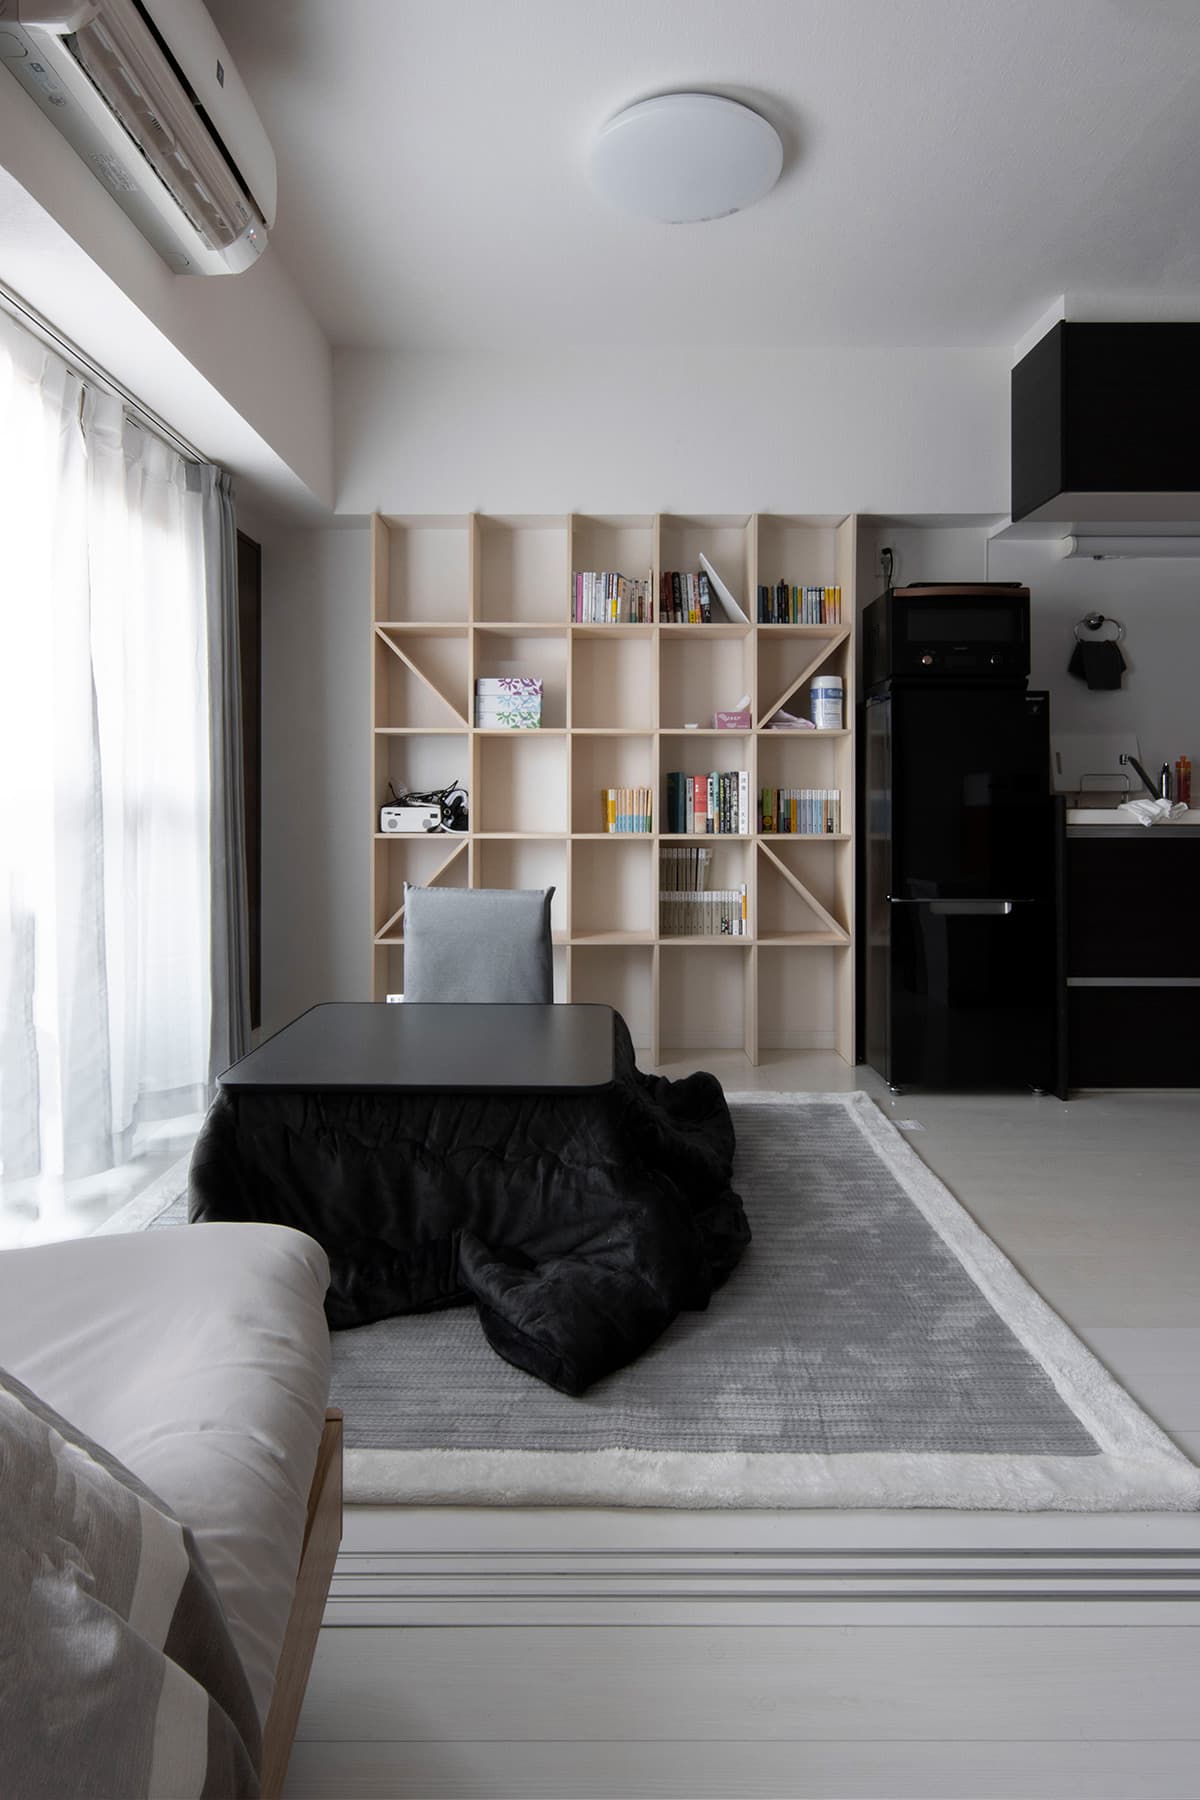 生活空間と学習空間を綺麗に使い分ける | 壁一面の本棚 奥行250 